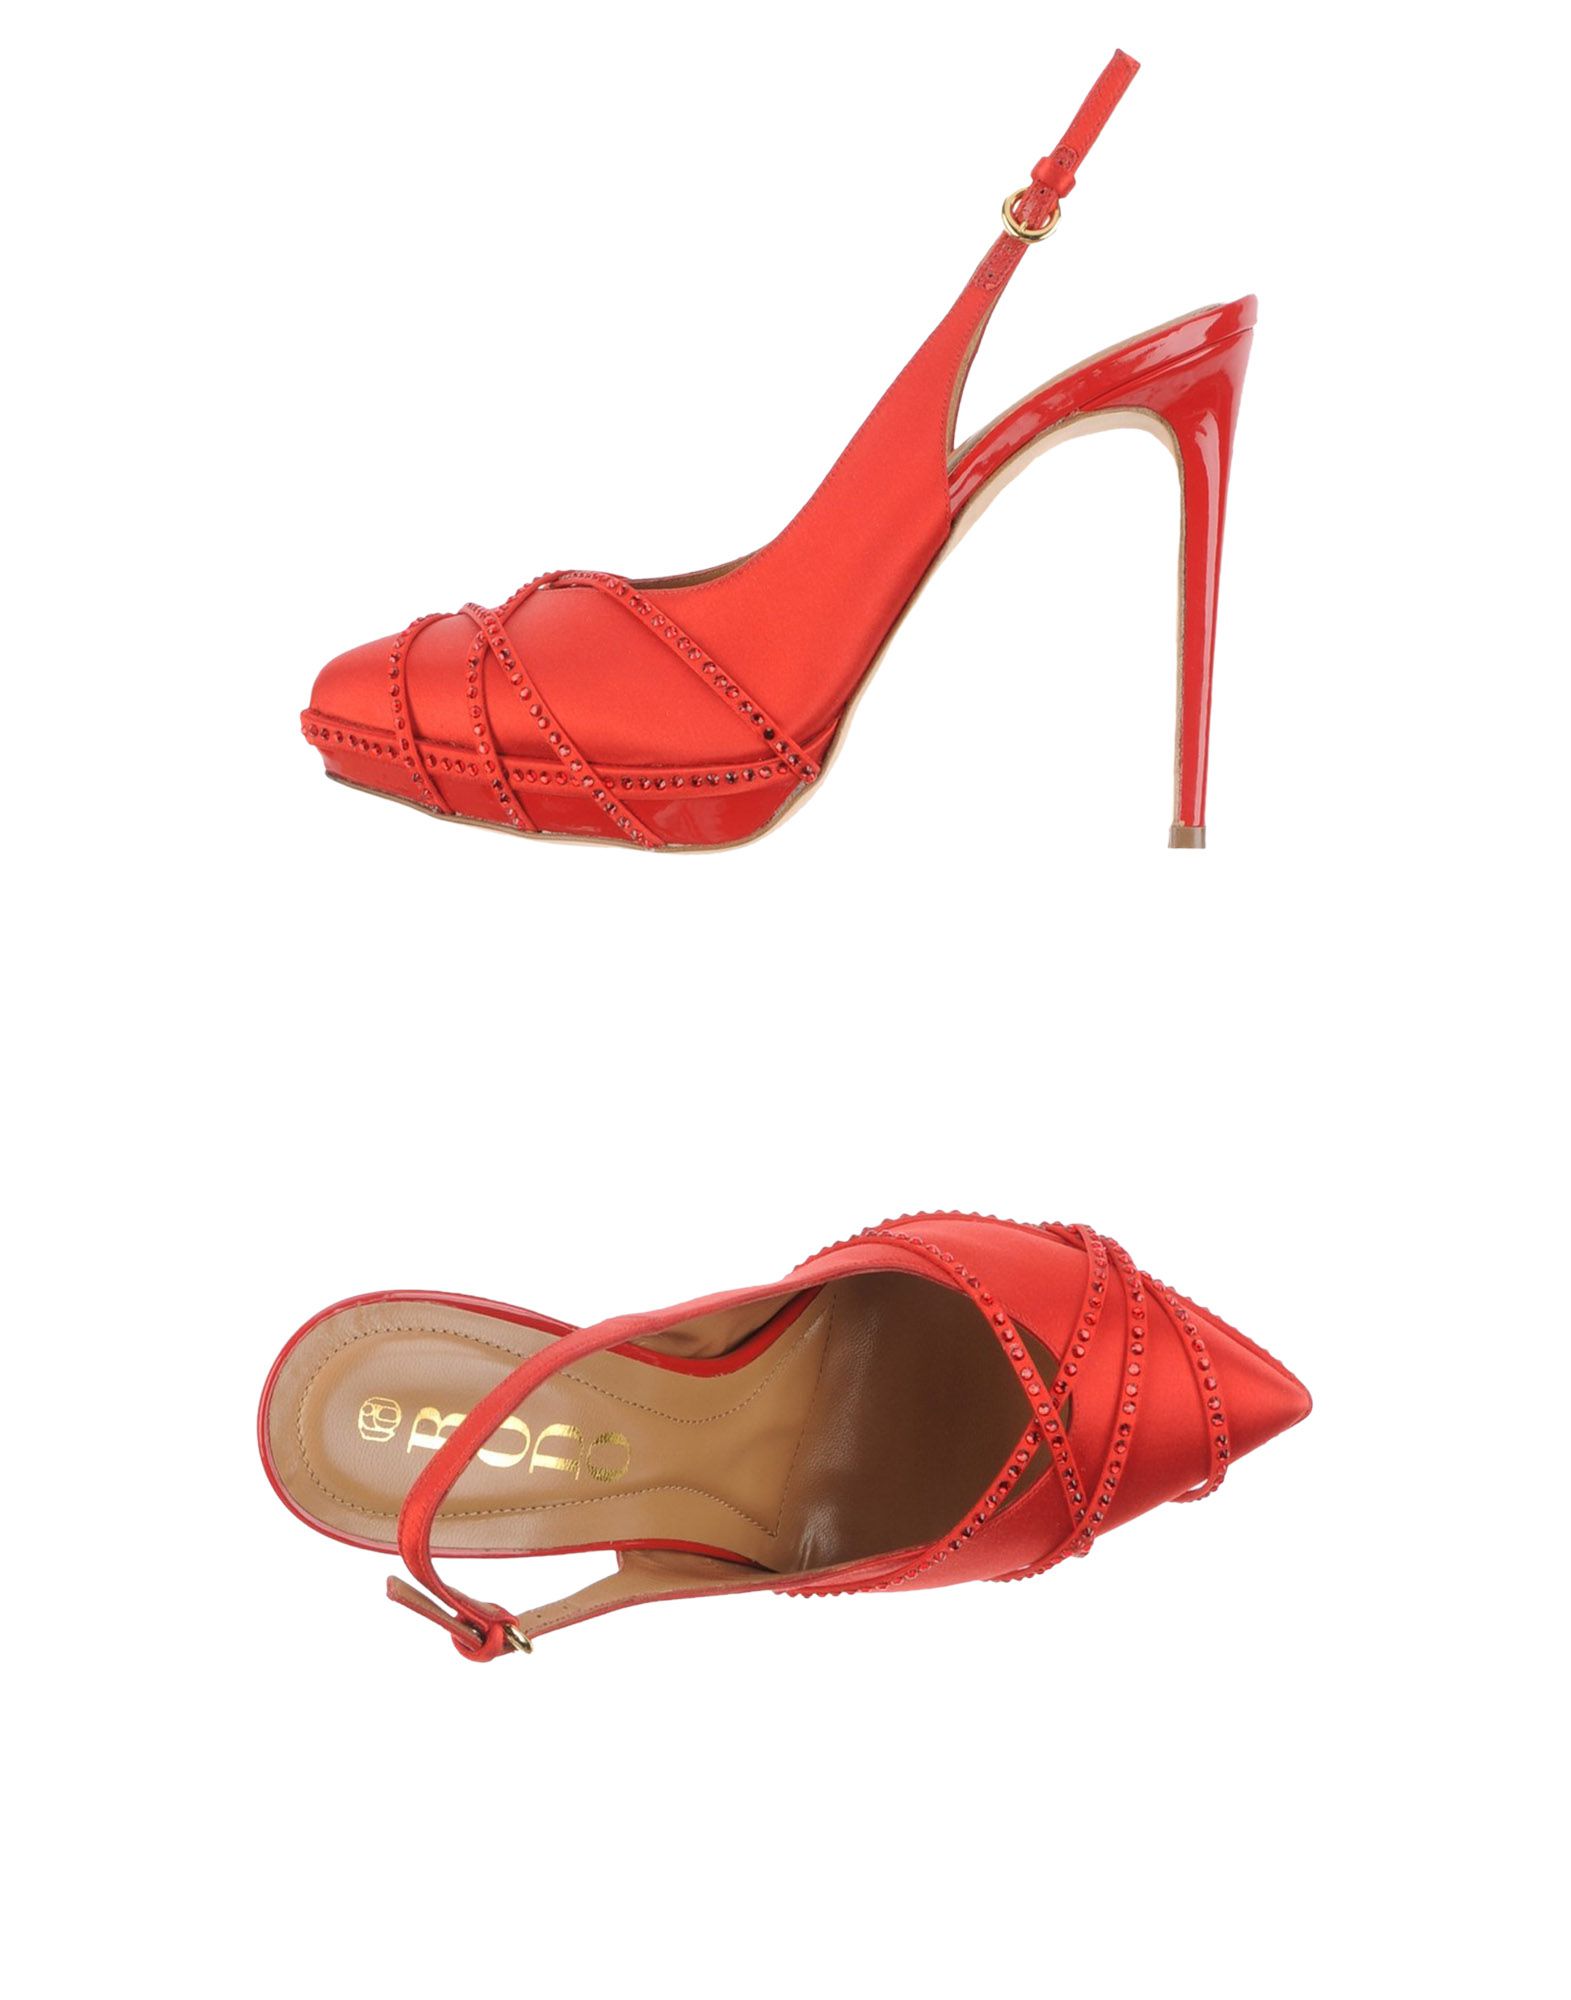 Foto Rodo Zapatos Abiertos Mujer Rojo foto 909378